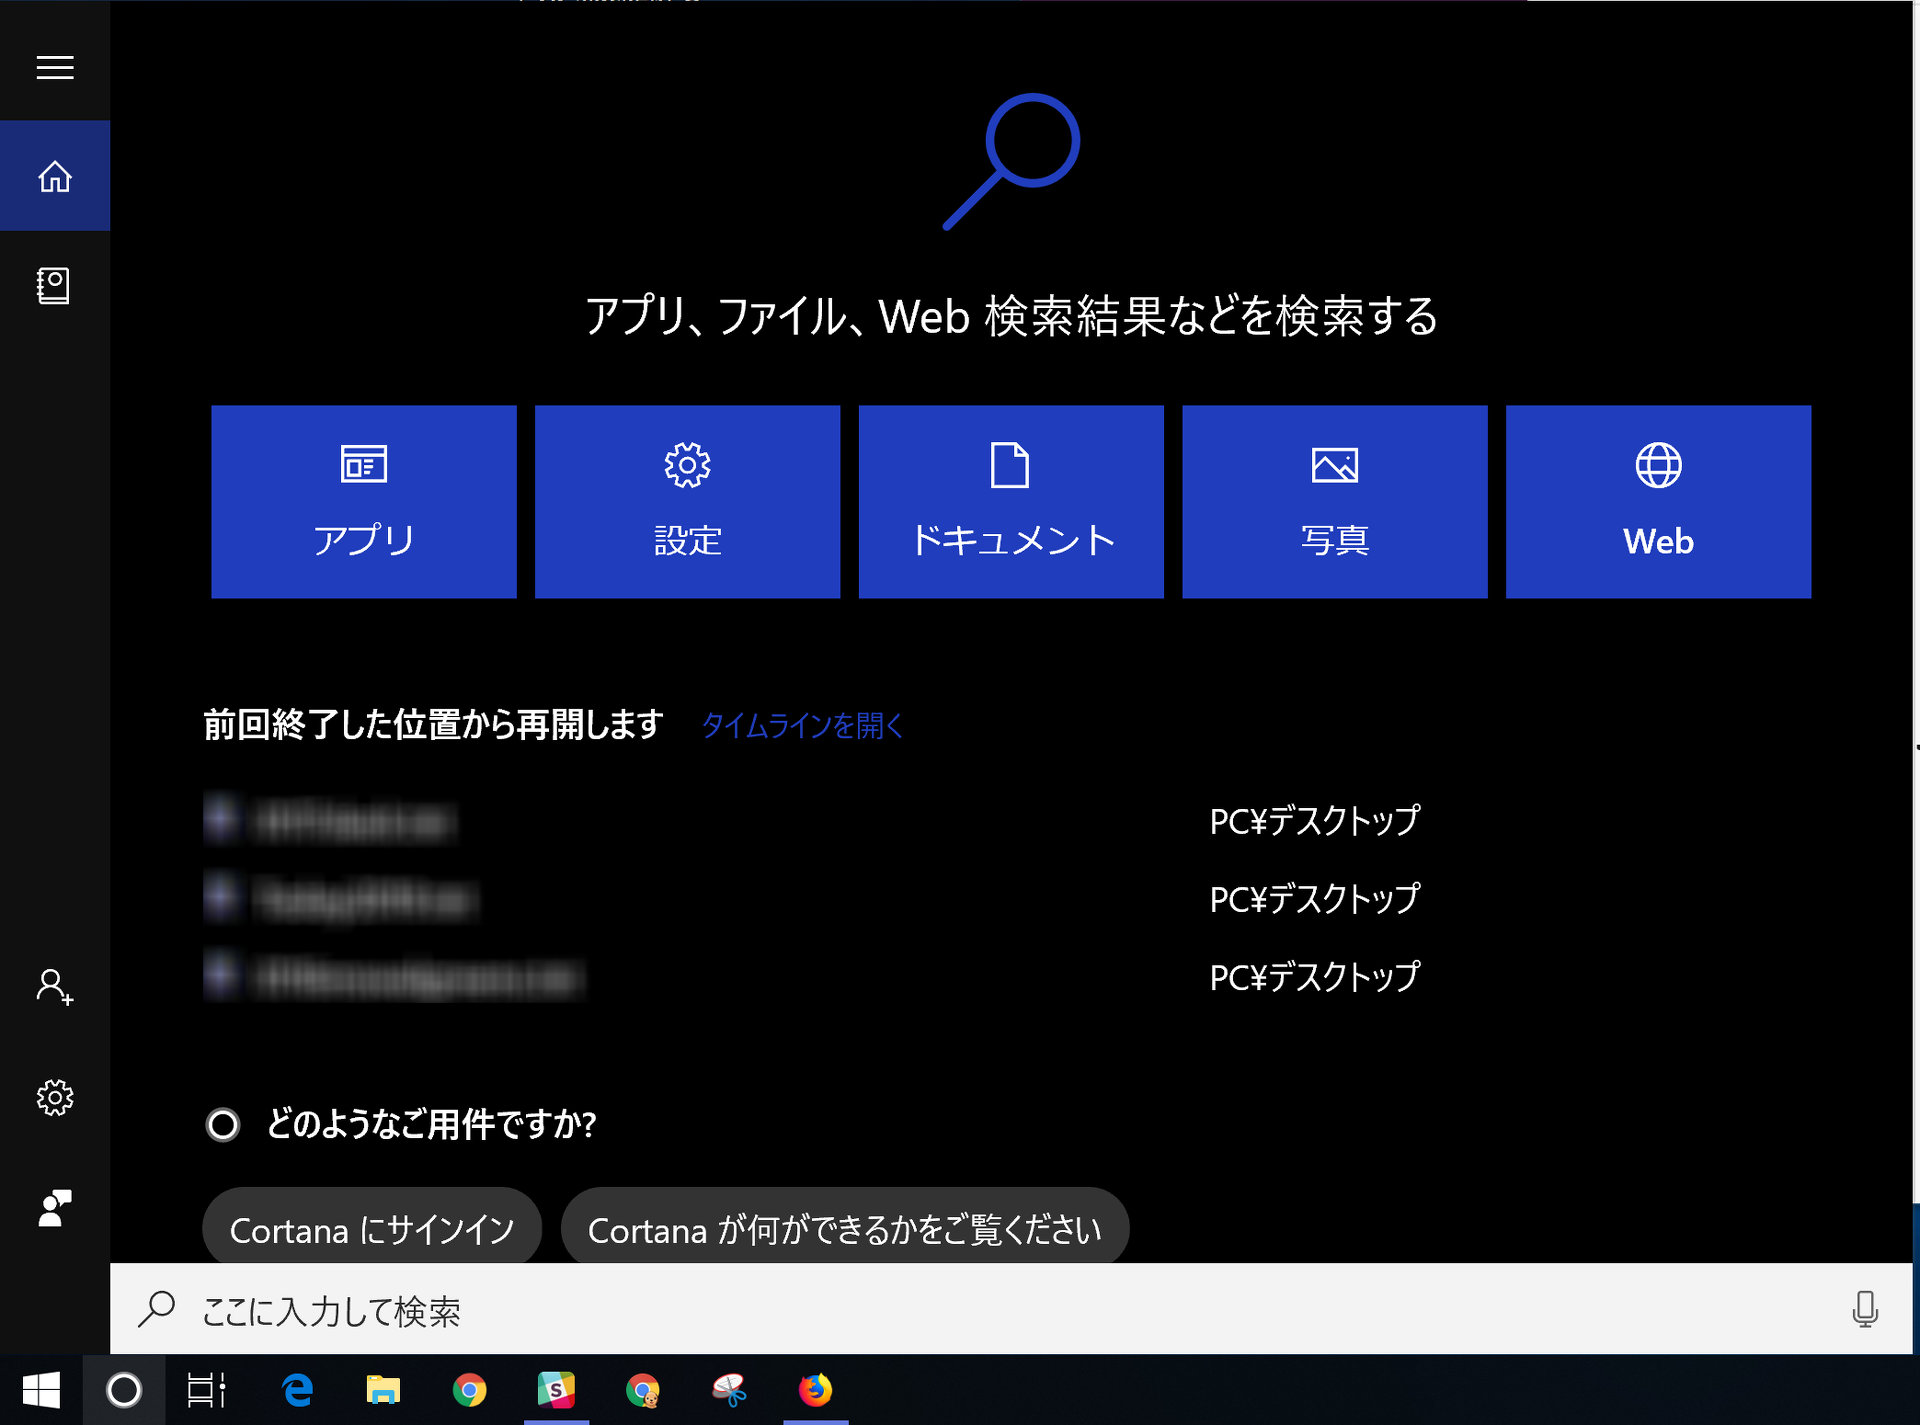  Windows 10io[W1809jCortanaACR